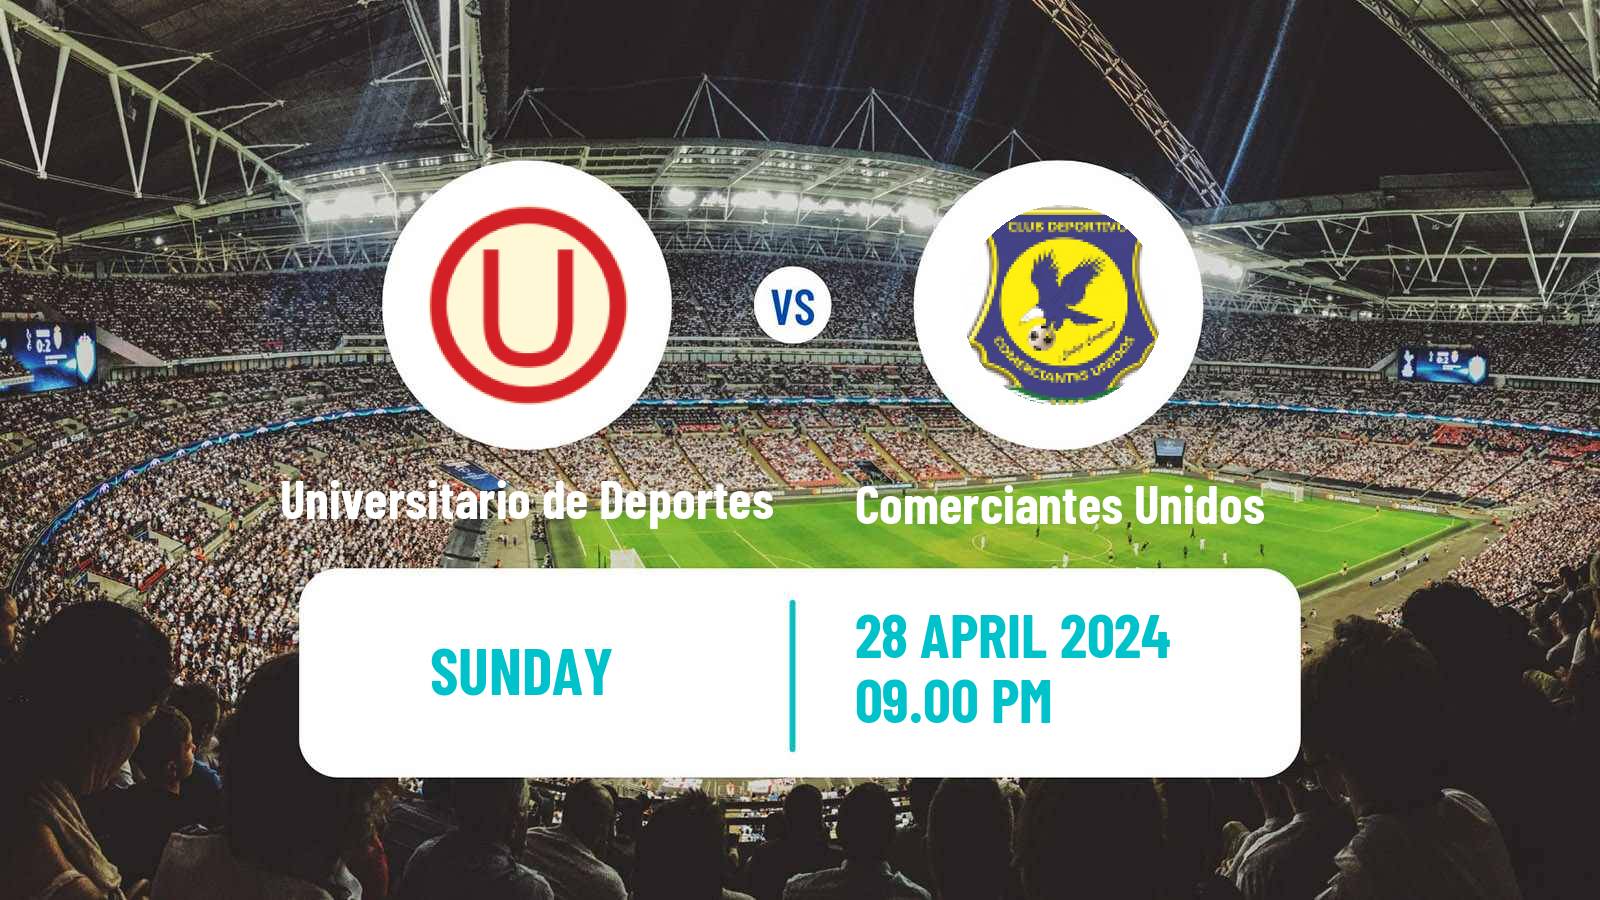 Soccer Peruvian Liga 1 Universitario de Deportes - Comerciantes Unidos